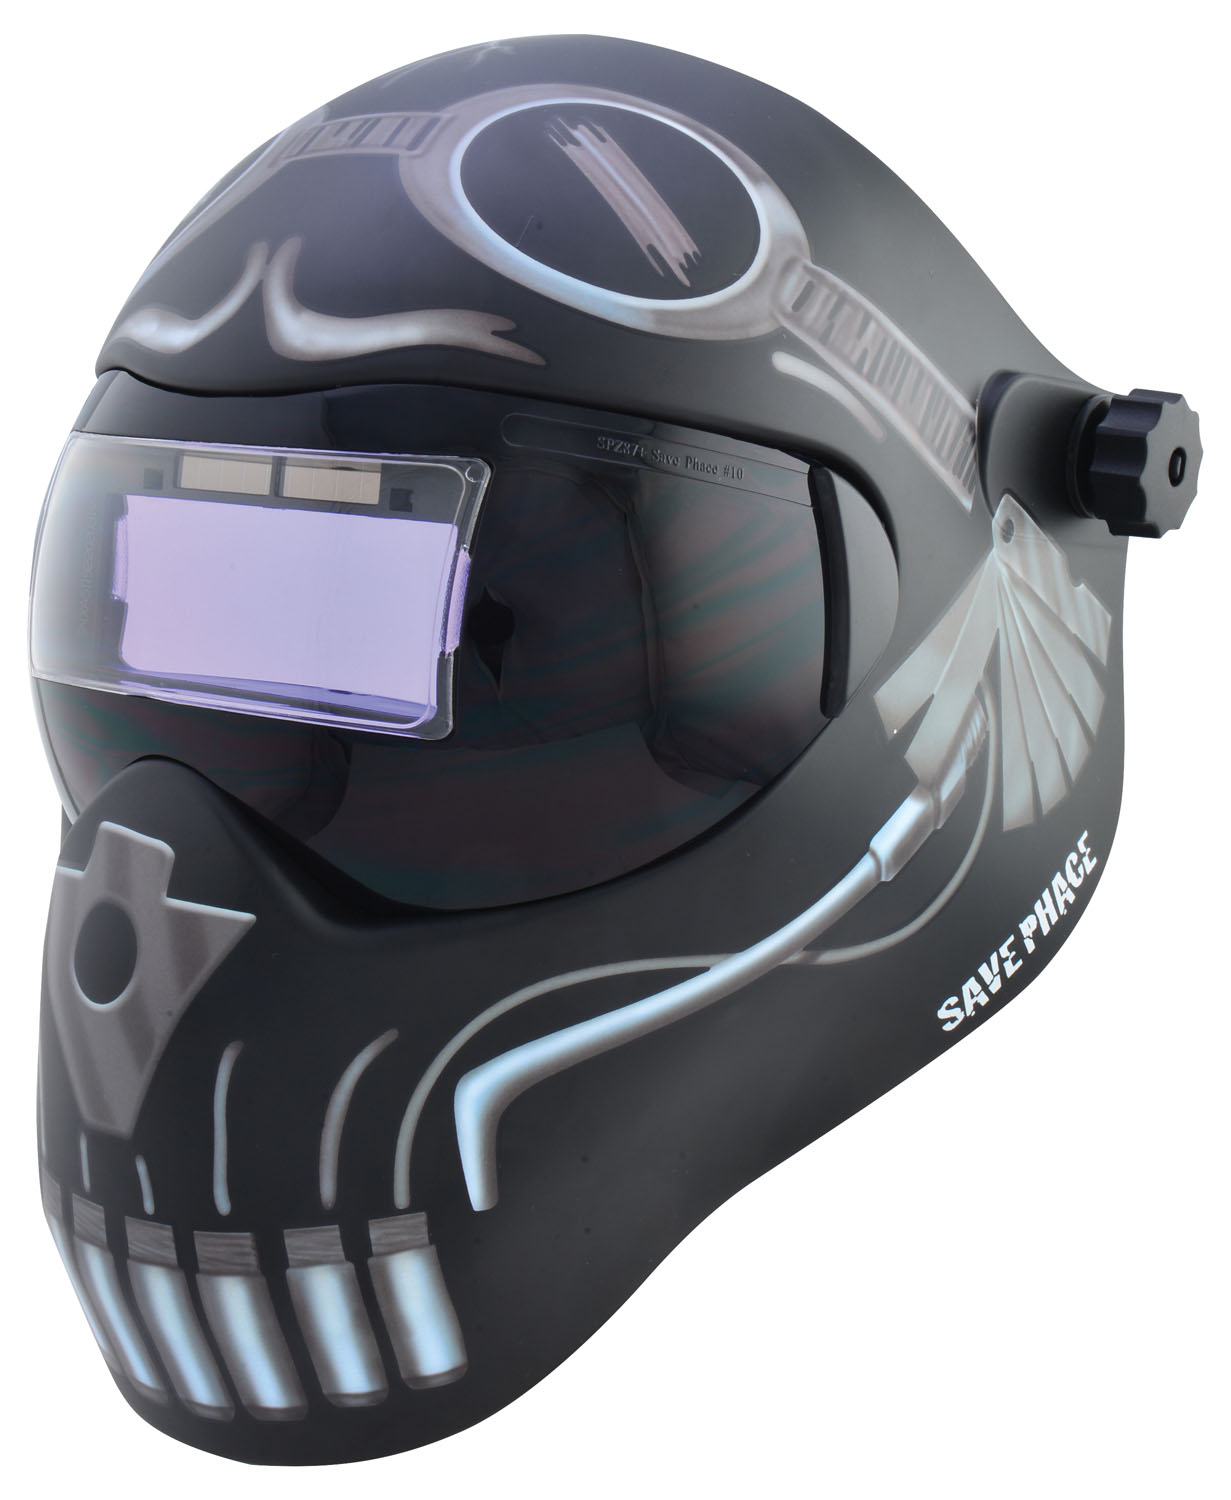 "Skeletor" I-Series EFP welding helmet